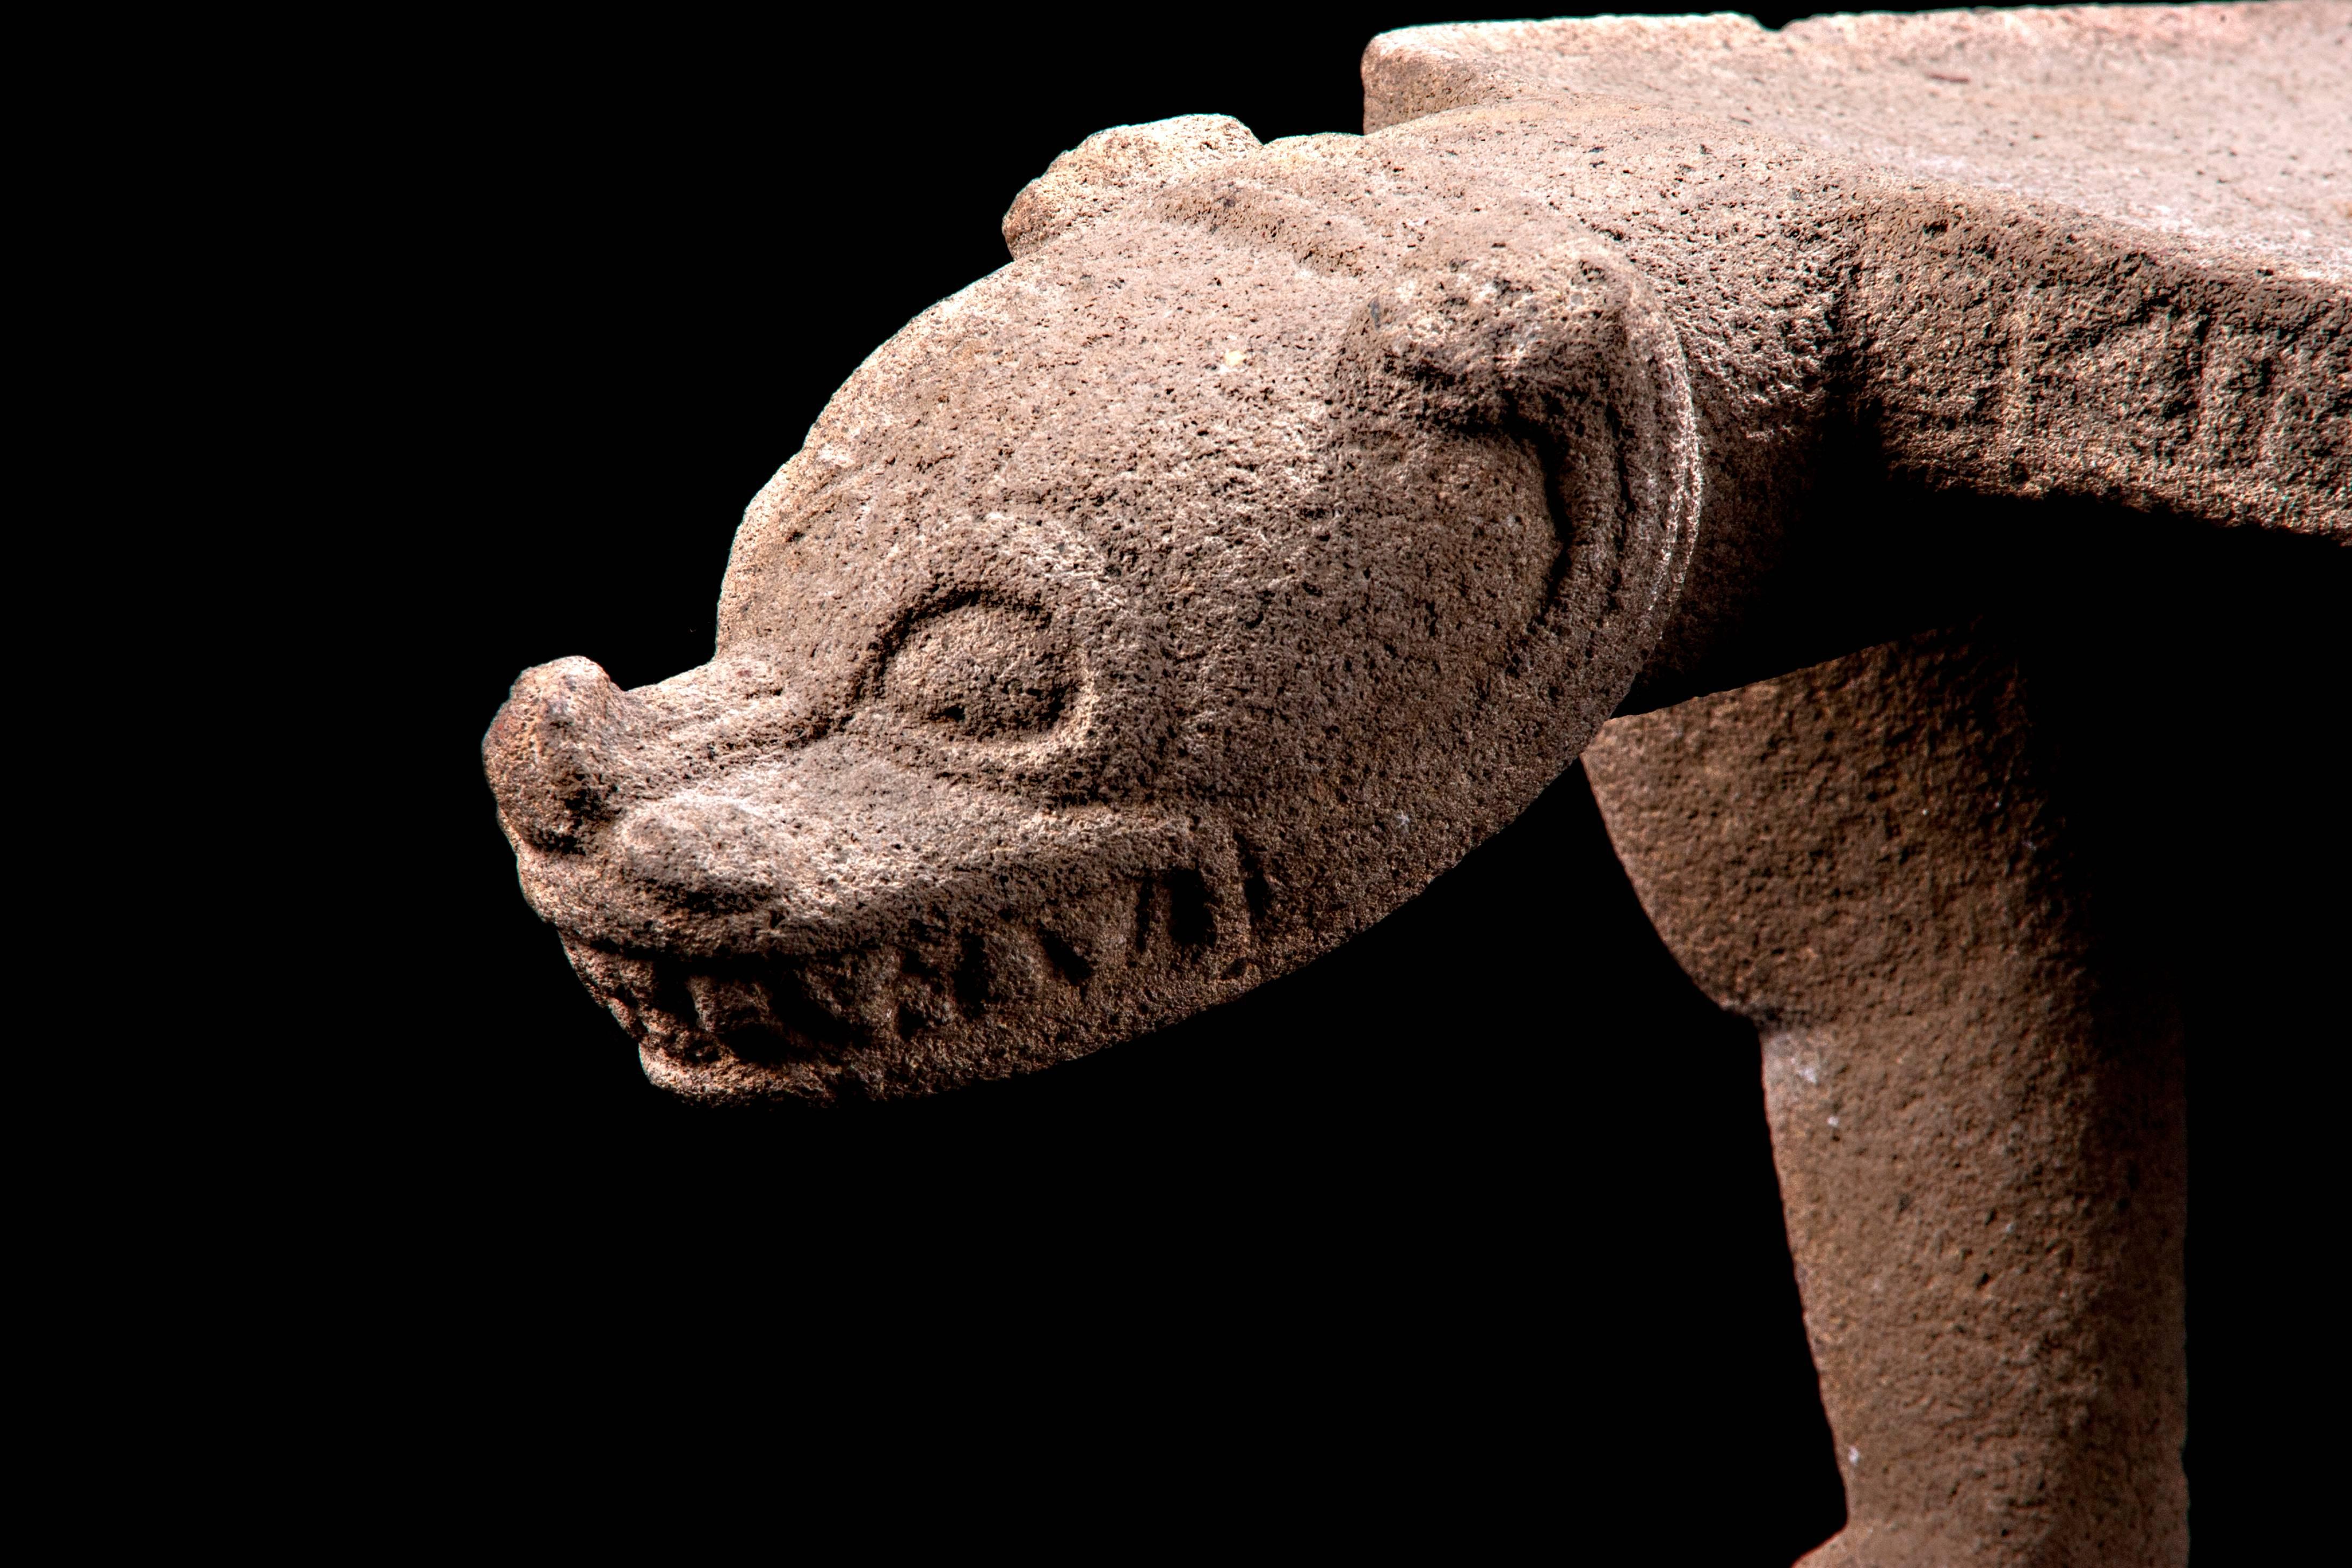 Siège cérémoniel en basalte de Nicoya en forme de jaguar. Publié dans le musée de l'Arizona. 

Ce grand exemplaire finement sculpté, qui témoigne du savoir-faire et de l'artisanat costariciens, a la forme d'un jaguar qui, selon les conquistadors